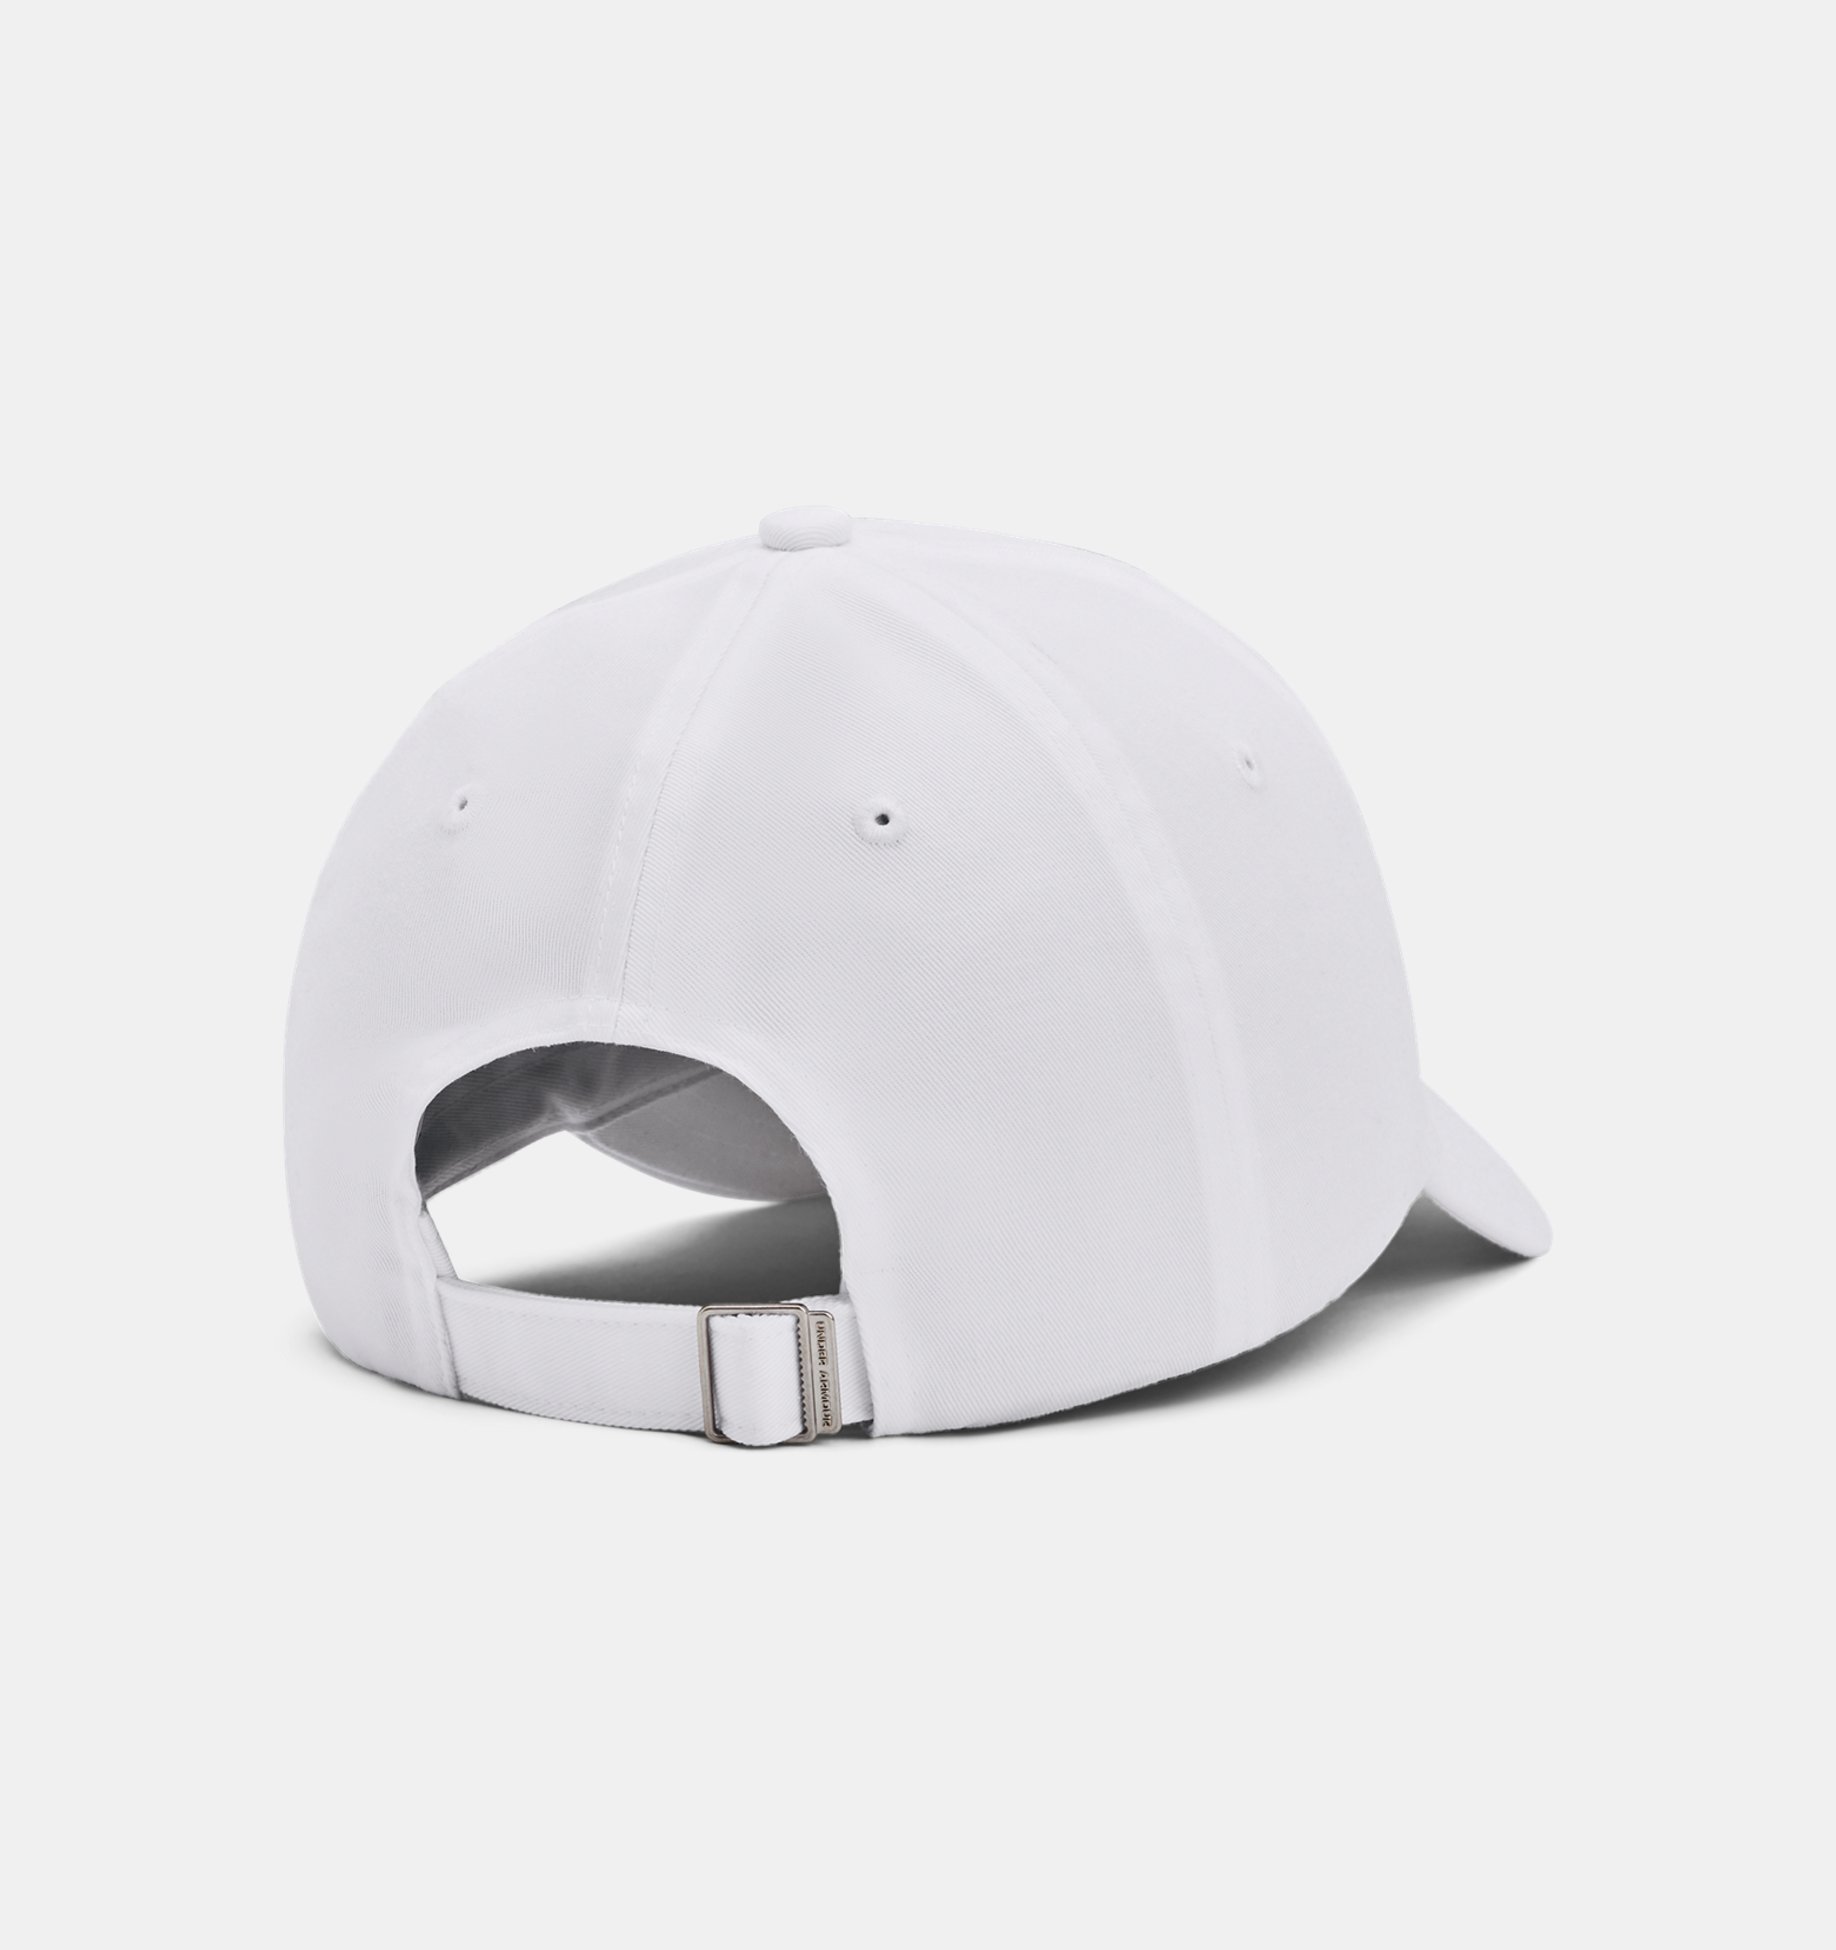 Caps -  under armour Favorite Hat